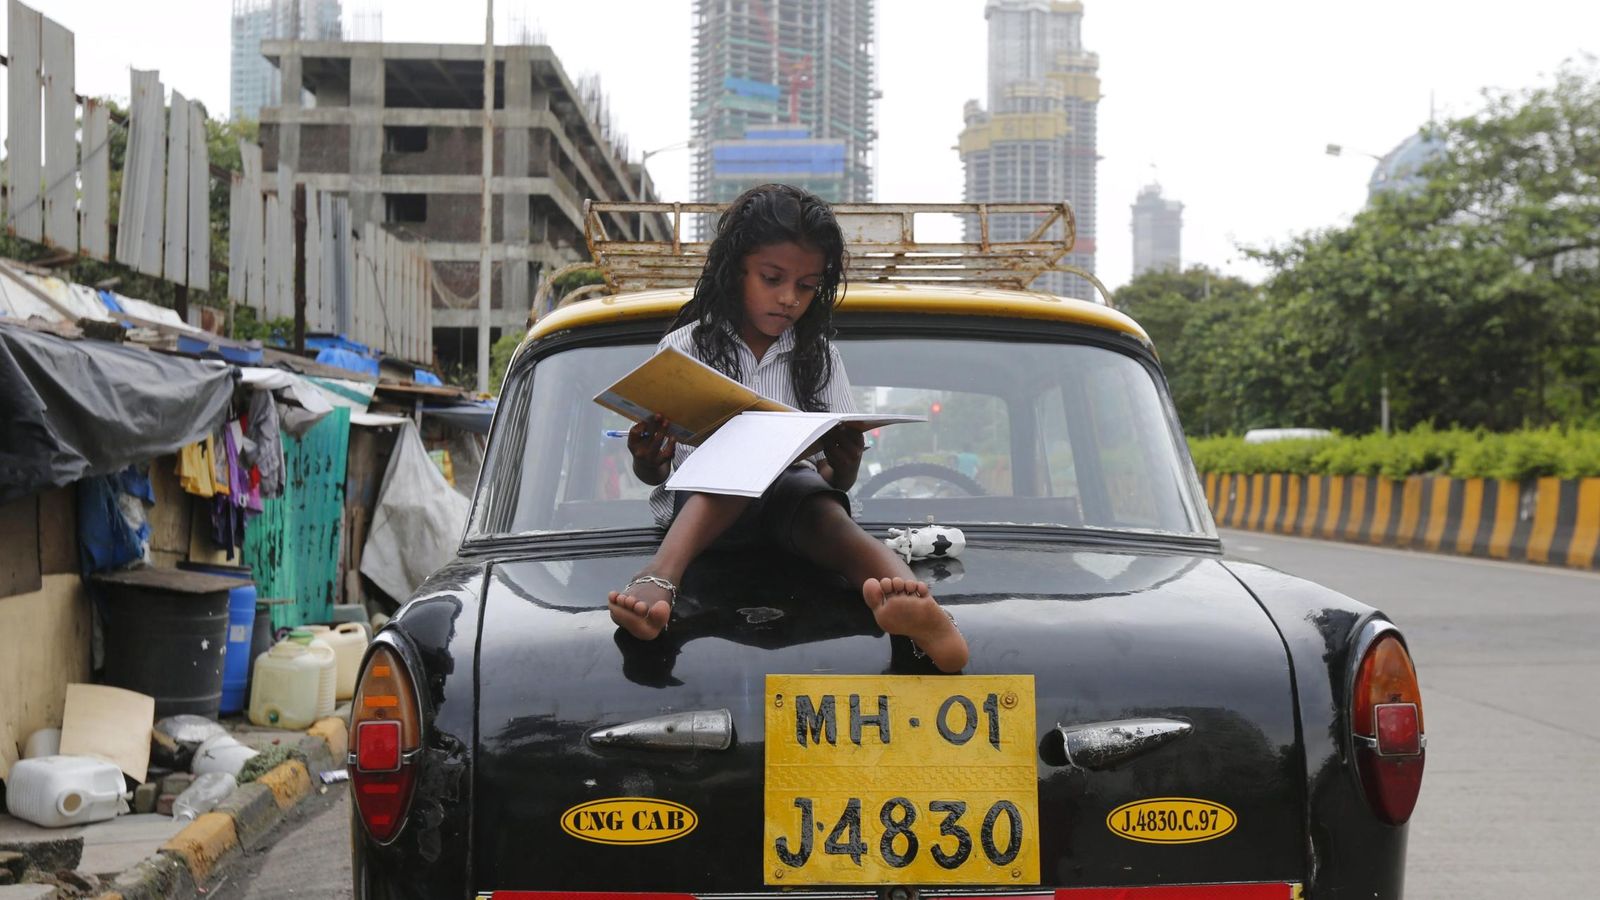 Foto: Una niña estudia en la parte trasera de un taxi en un barrio de chabolas de Mumbai, India, en agosto de 2015 (Reuters)